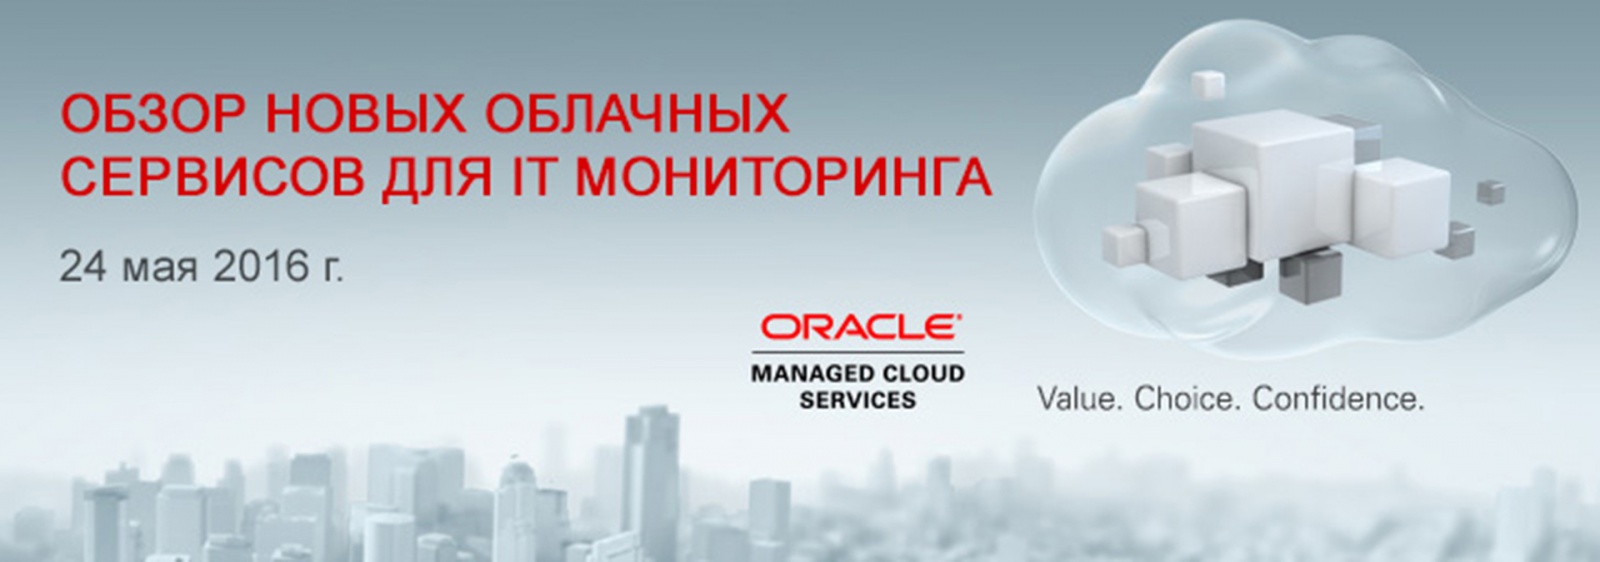 Приглашение на веб-семинар Oracle «Обзор новых облачных сервисов для IT-мониторинга» - 1